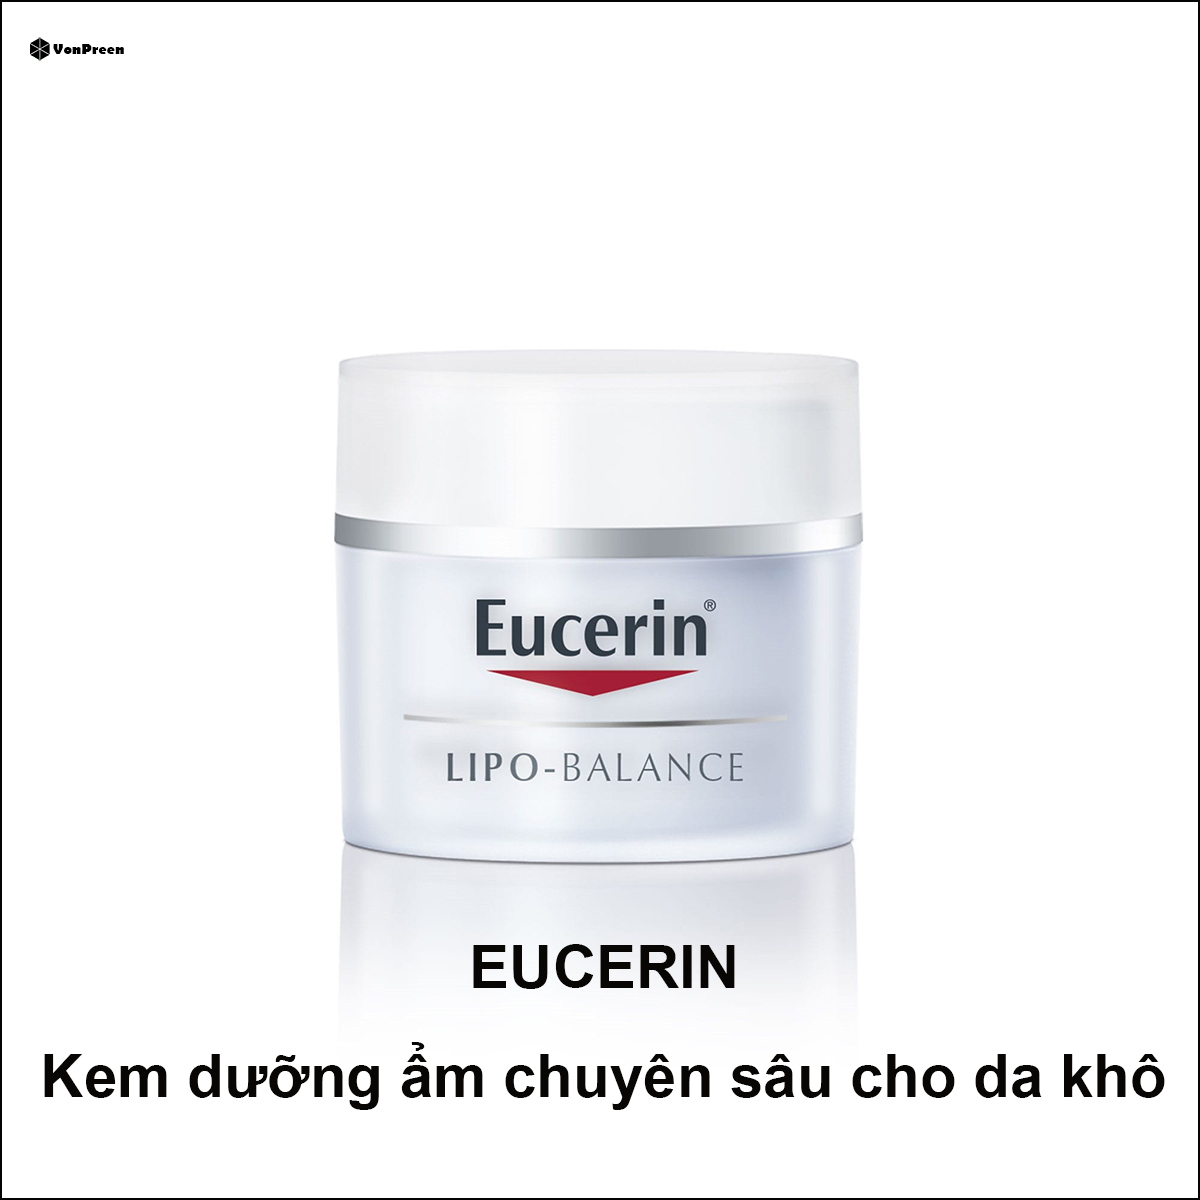 Review kem dưỡng ẩm Eucerin cho da khô tốt nhất hiện nay.ADD